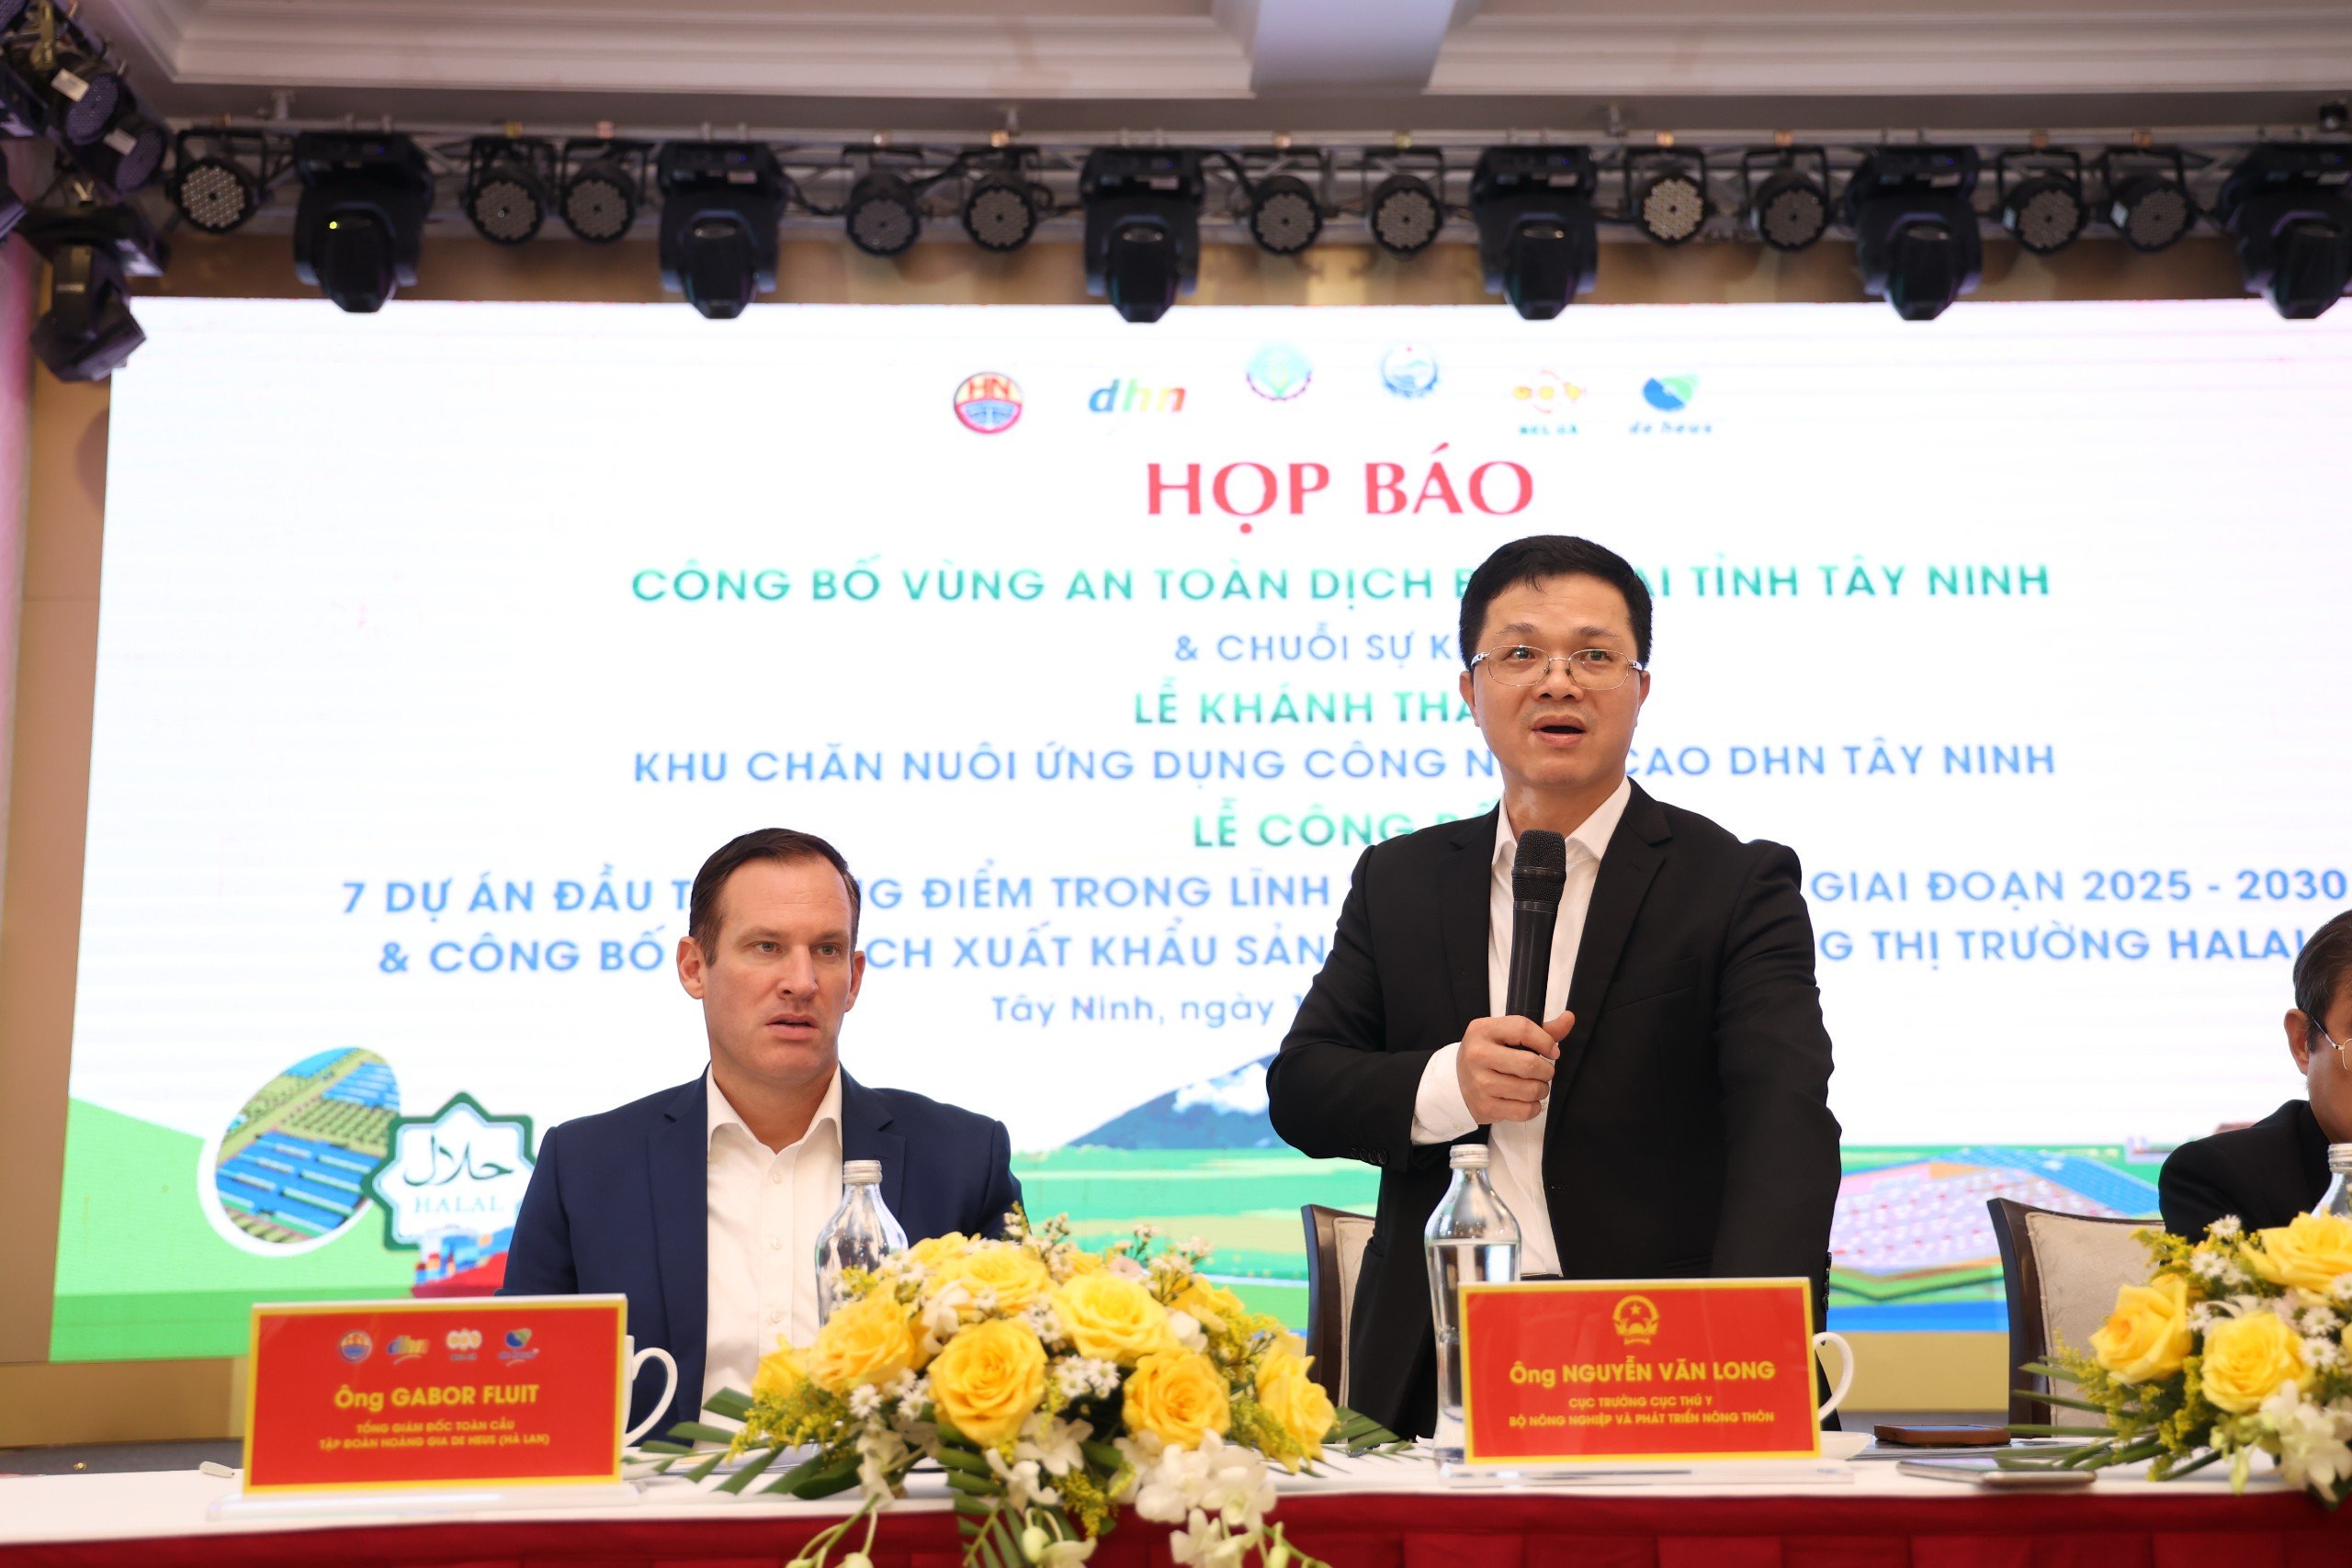 Tây Ninh chuẩn bị đón 1.000 khách dự chuỗi sự kiện lớn ngành nông nghiệp và công bố vùng an toàn dịch bệnh- Ảnh 2.